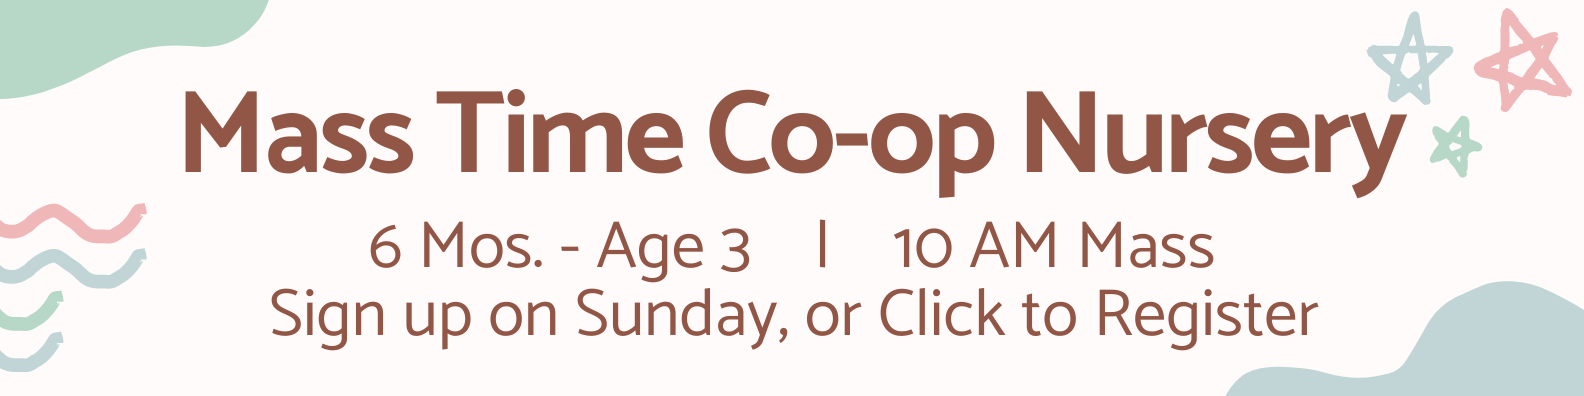 Mass Time Co-op Nursery - Sign up